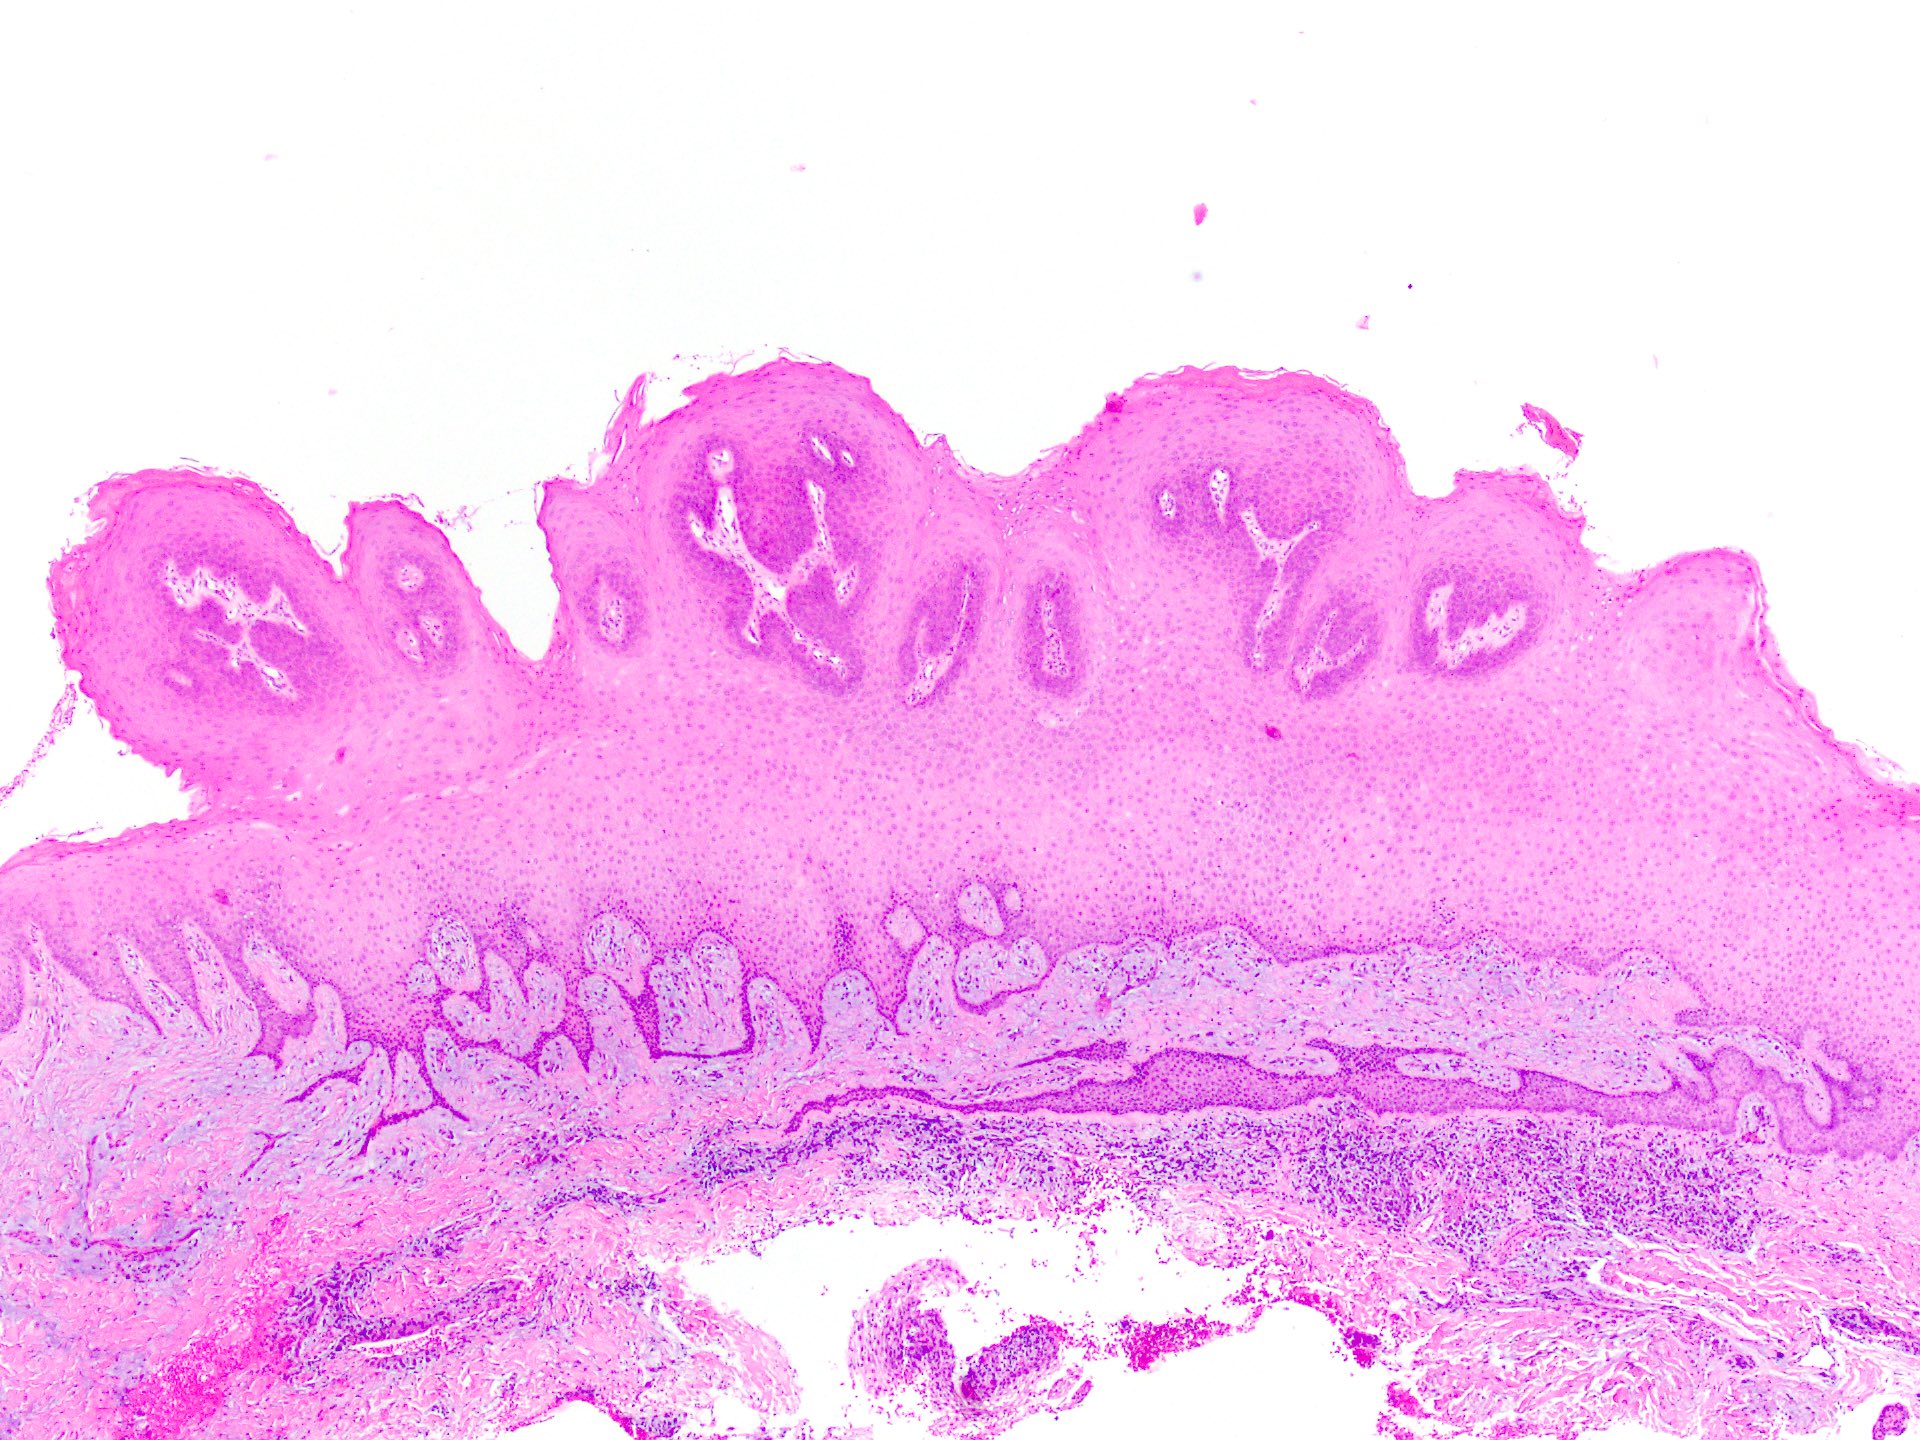 papilloma skin pathology outlines